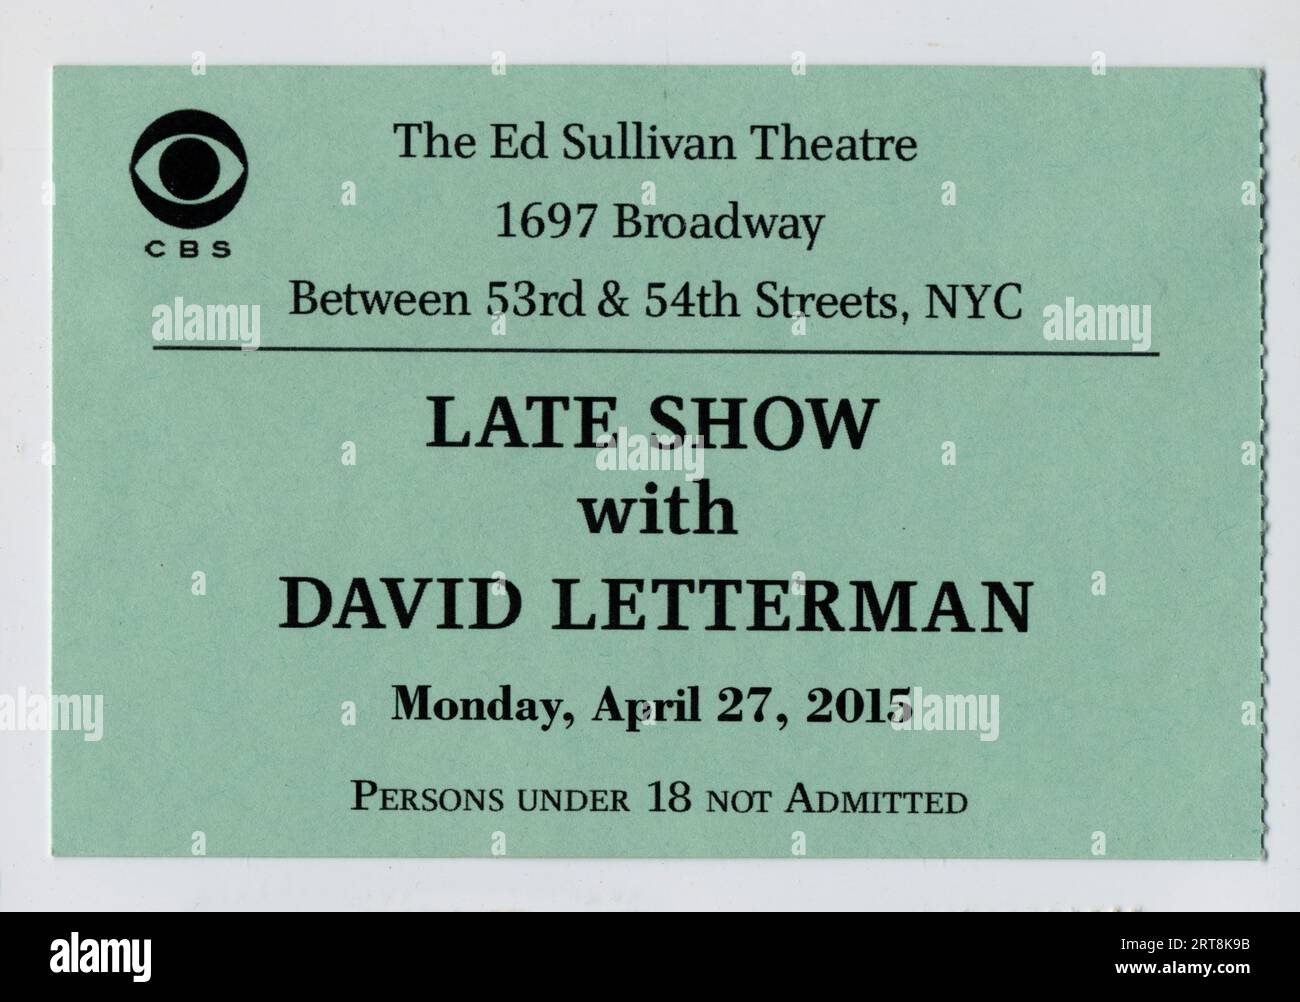 Un biglietto usato per il Late Show with David Letterman registrato e trasmesso lunedì 27 aprile 2015. Gli ospiti erano John Mellencamp e Todd Rundgren. Foto Stock